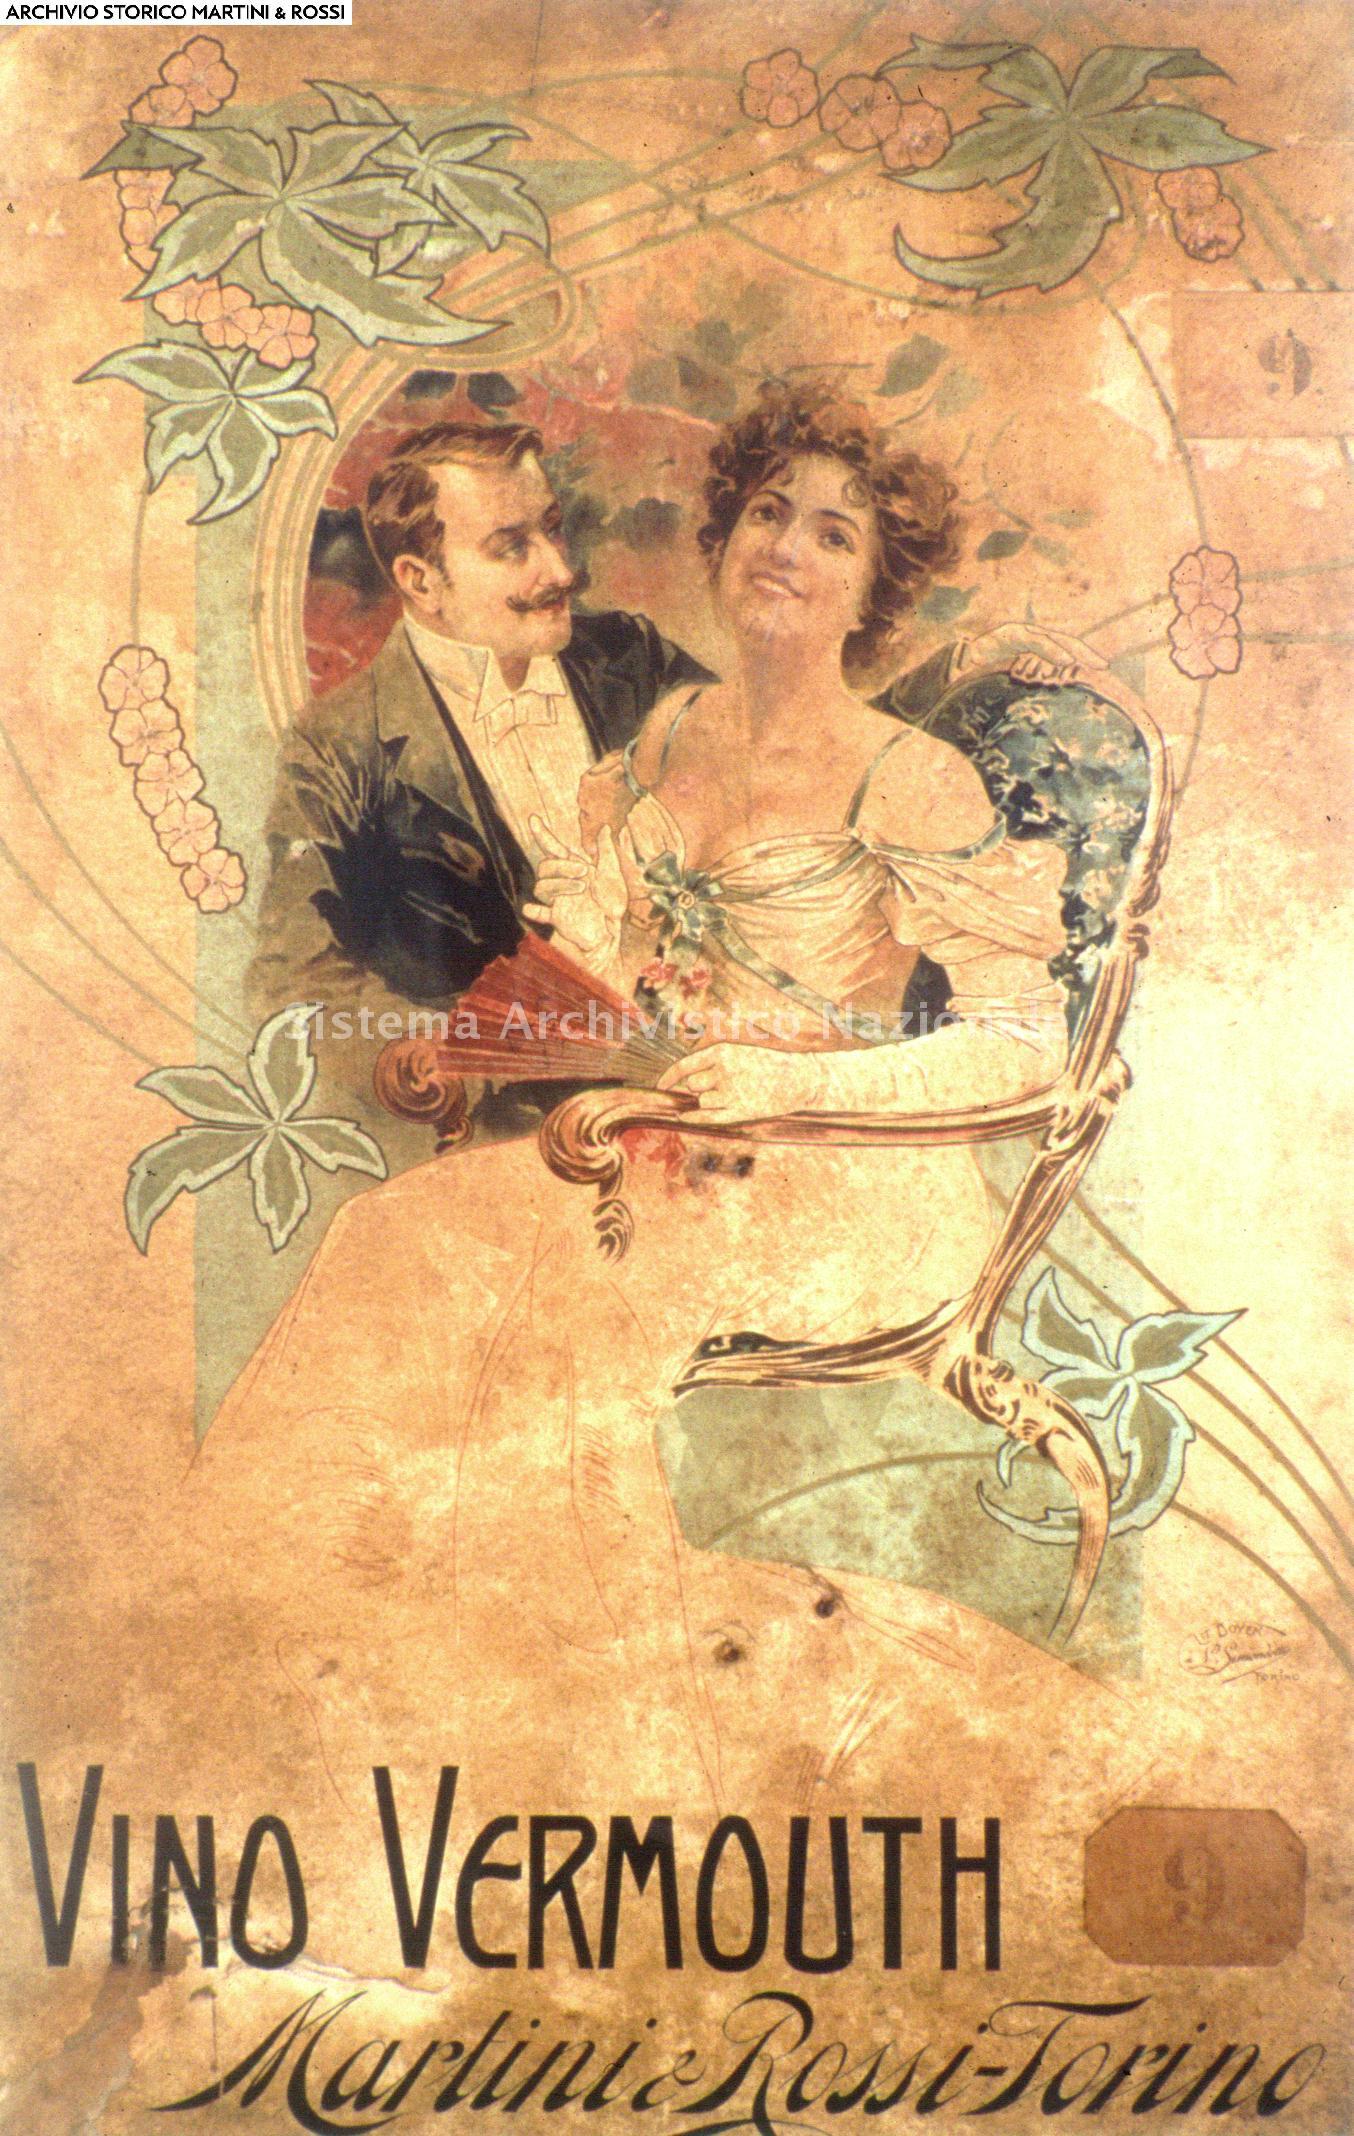   Manifesto pubblicitario del liquore vermouth prodotto dalla Martini & Rossi, stampato da Litografia Doyen di Torino, 1895 (Martini & Rossi spa, Fondo Martini & Rossi spa)
